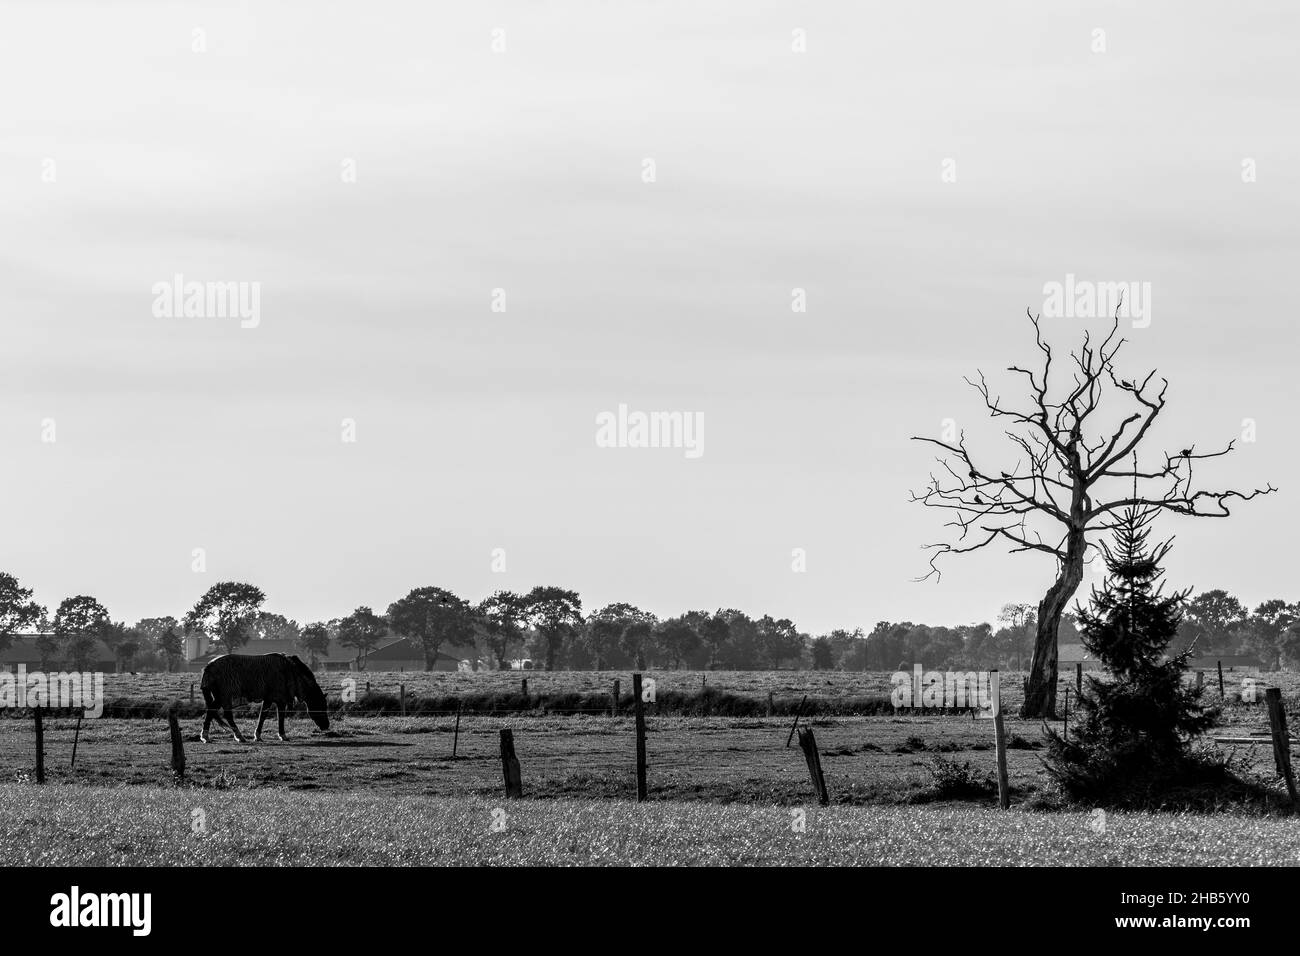 Scatto in scala di grigi di un cavallo che pascola nel campo Foto Stock